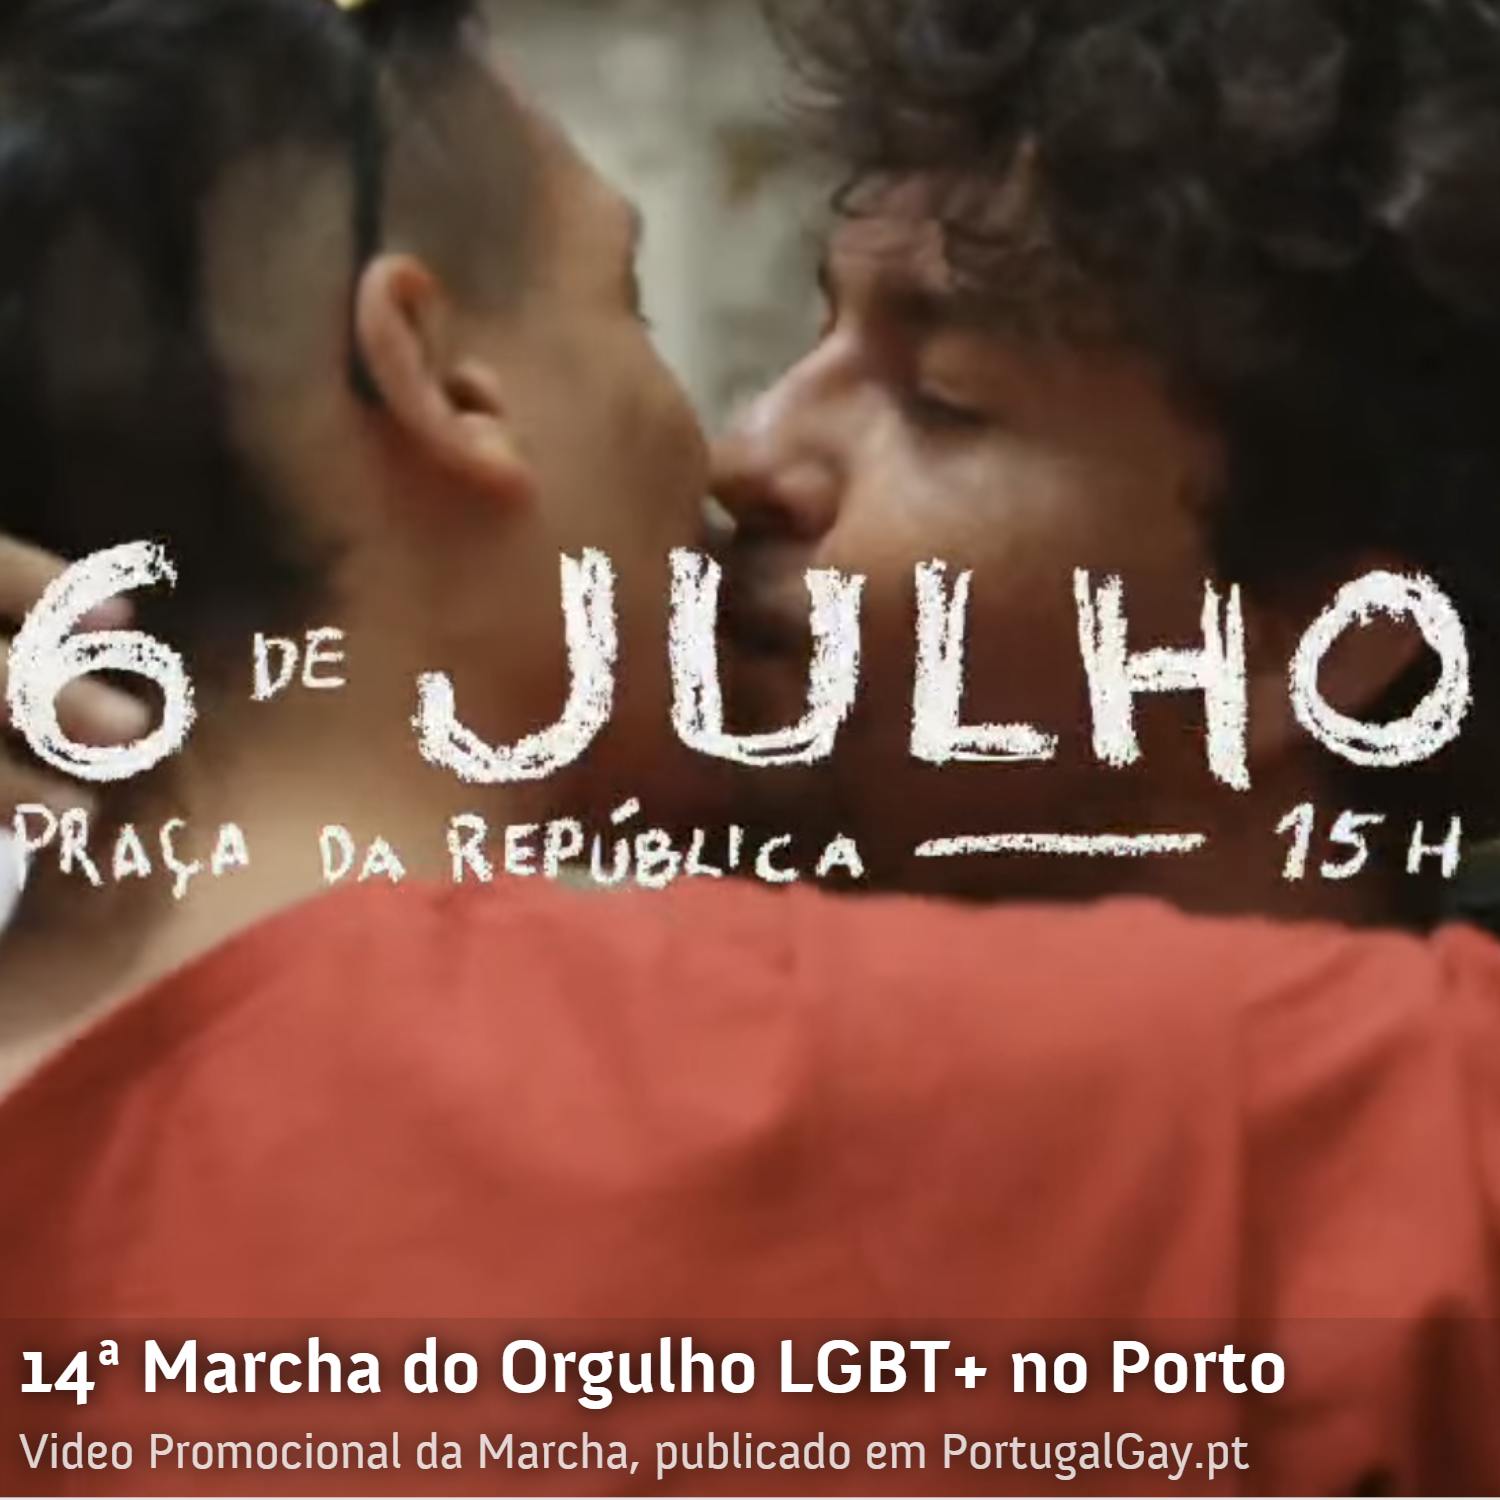 PORTUGAL: Marcha do Orgulho LGBT+ no Porto  j este sbado